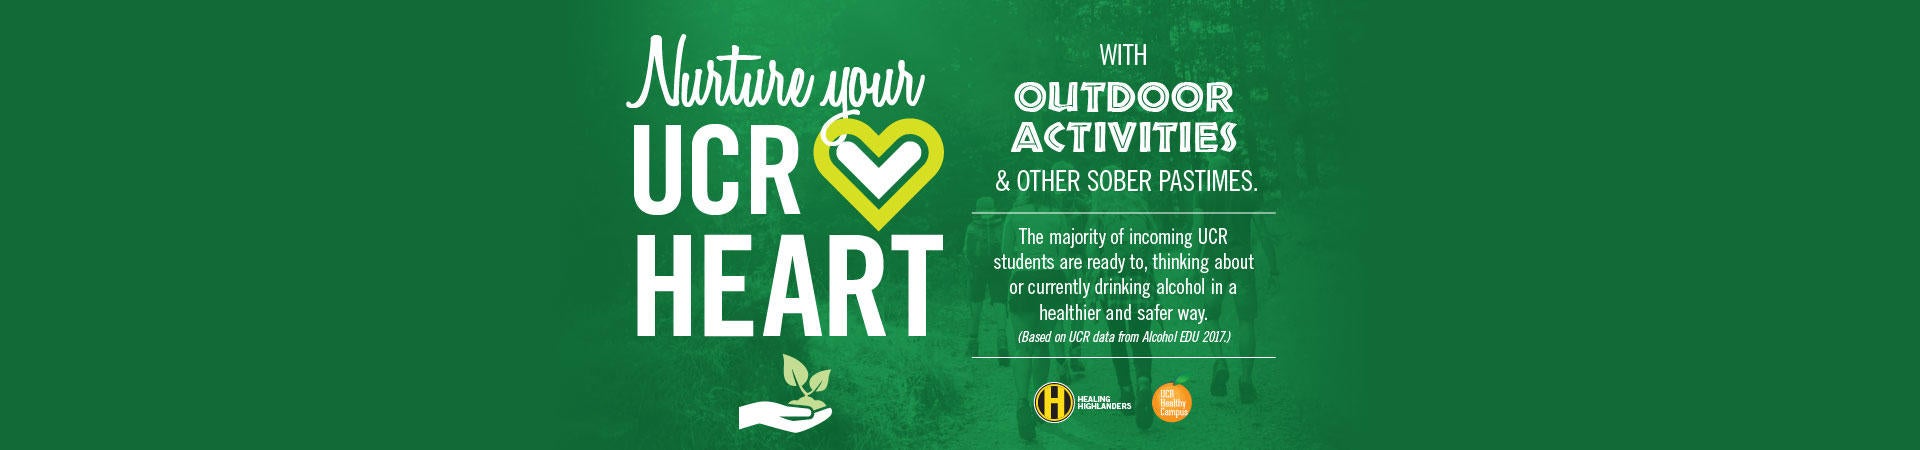 Nurture Your UCR Heart - Outdoor Activities